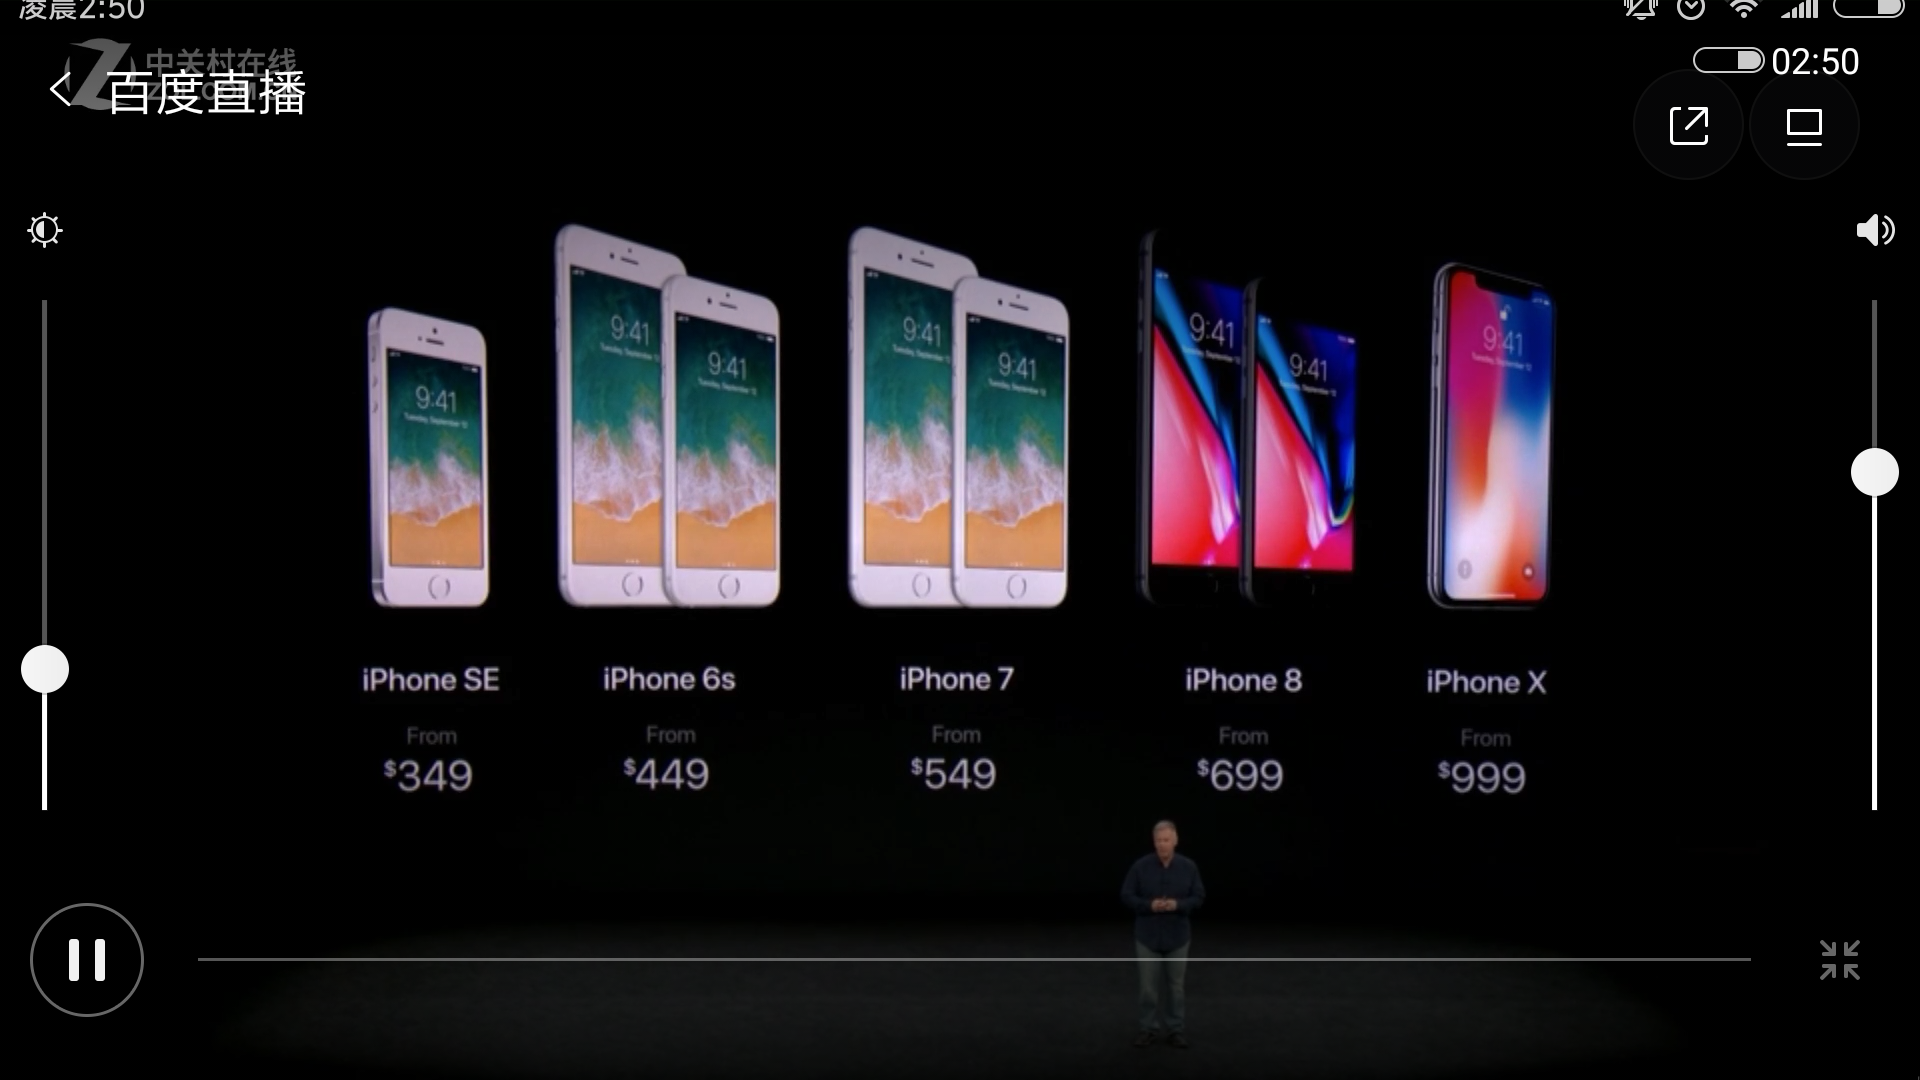 如何评价2017苹果秋季发布会iphone 8(plus)以及iphone x的定位?